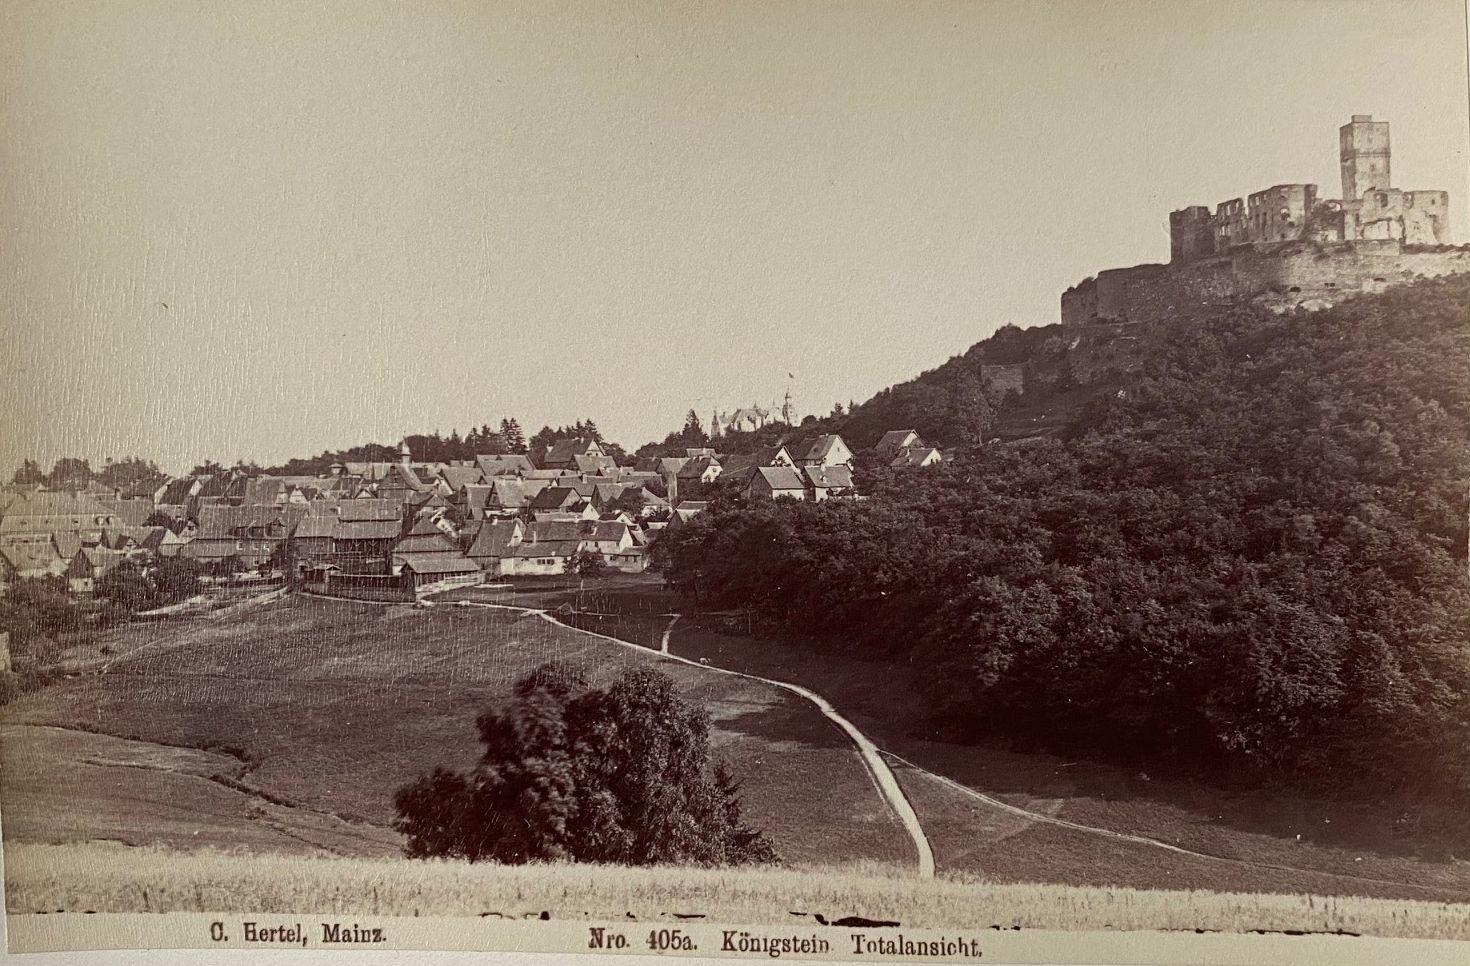 Fotografie, Carl Hertel No. 405a, Königstein, ca. 1885 (Taunus-Rhein-Main - Regionalgeschichtliche Sammlung Dr. Stefan Naas CC BY-NC-SA)